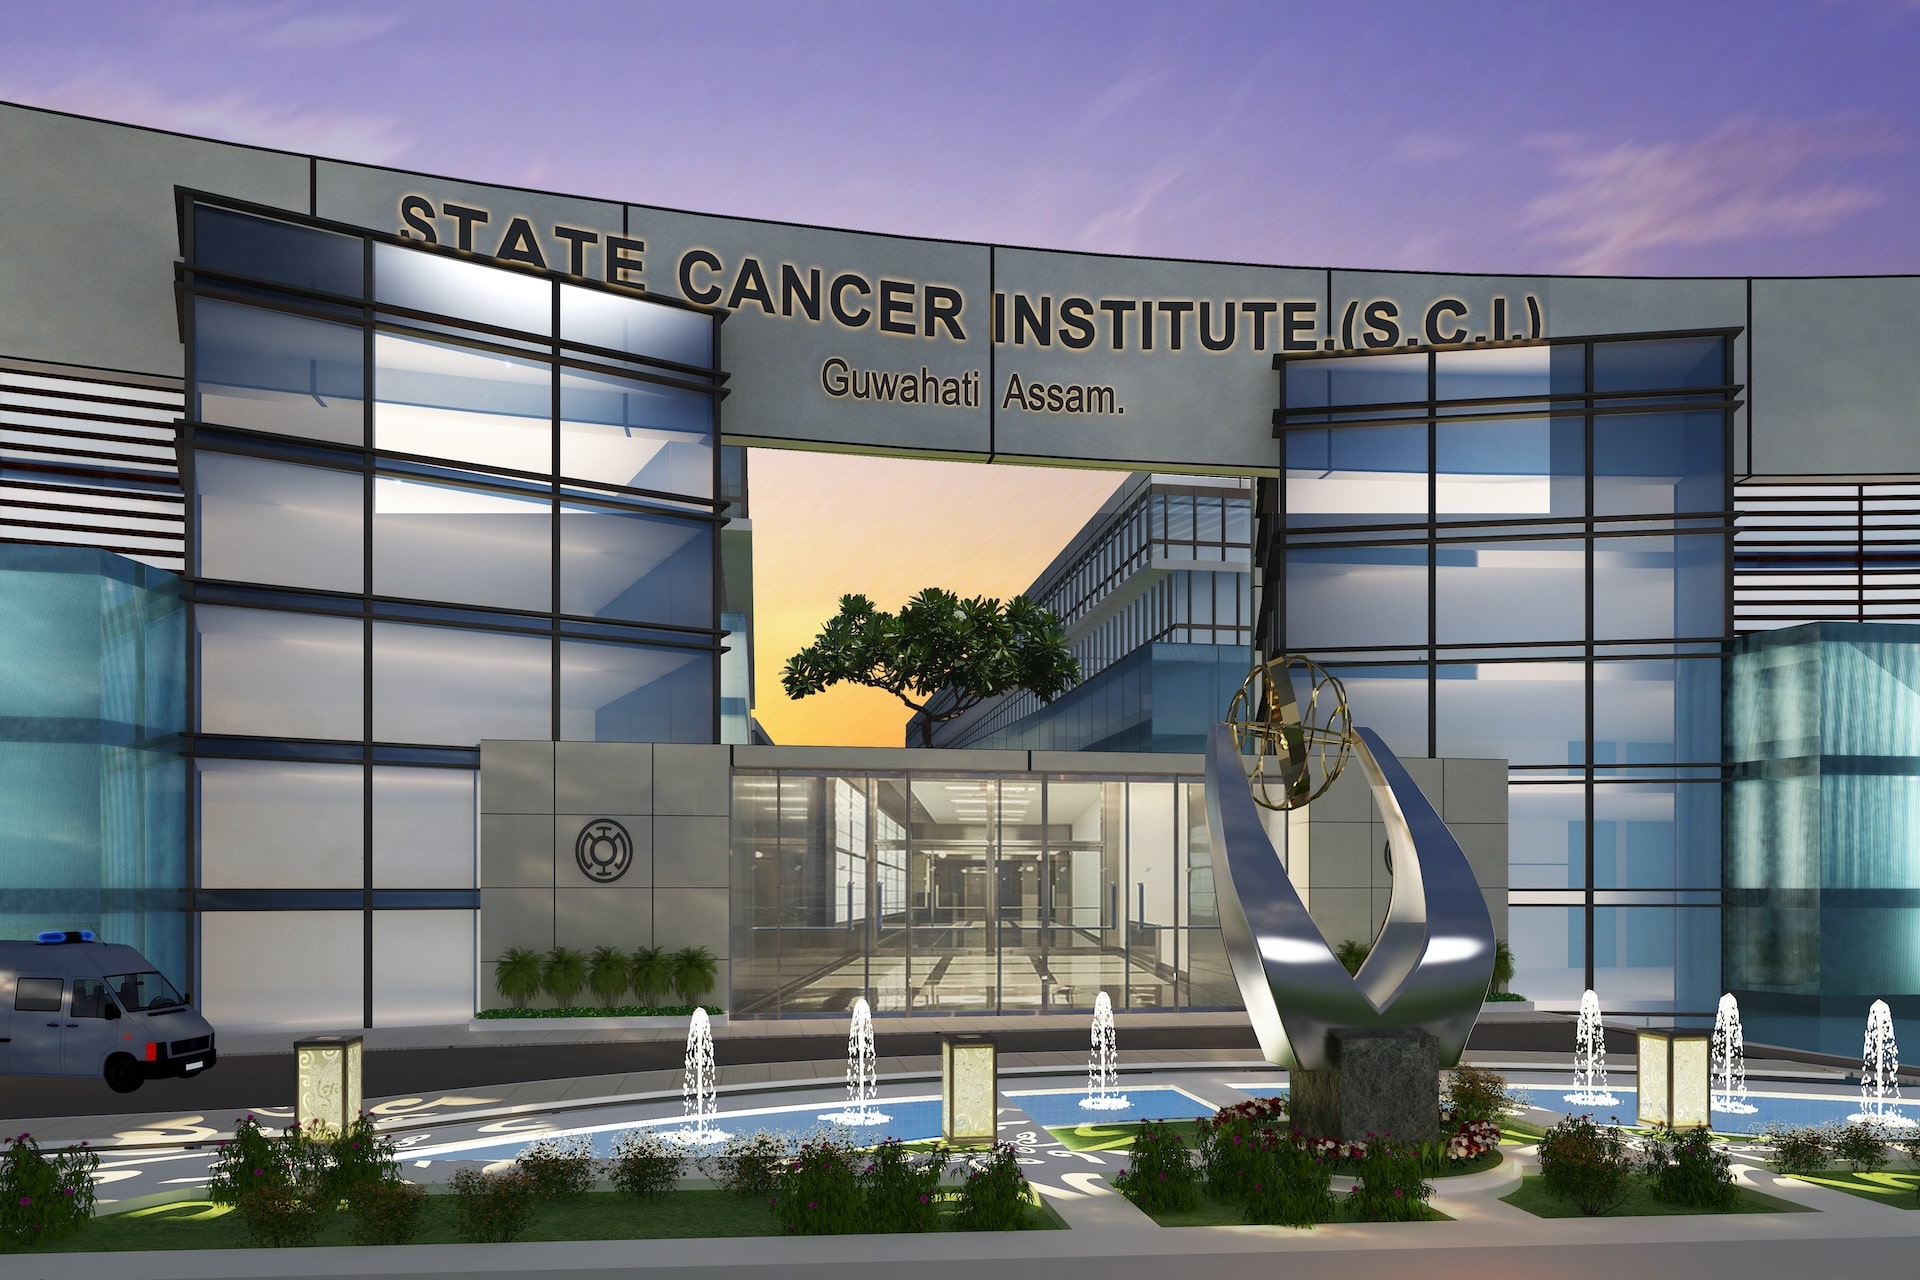 State Cancer Institute, Guwahati